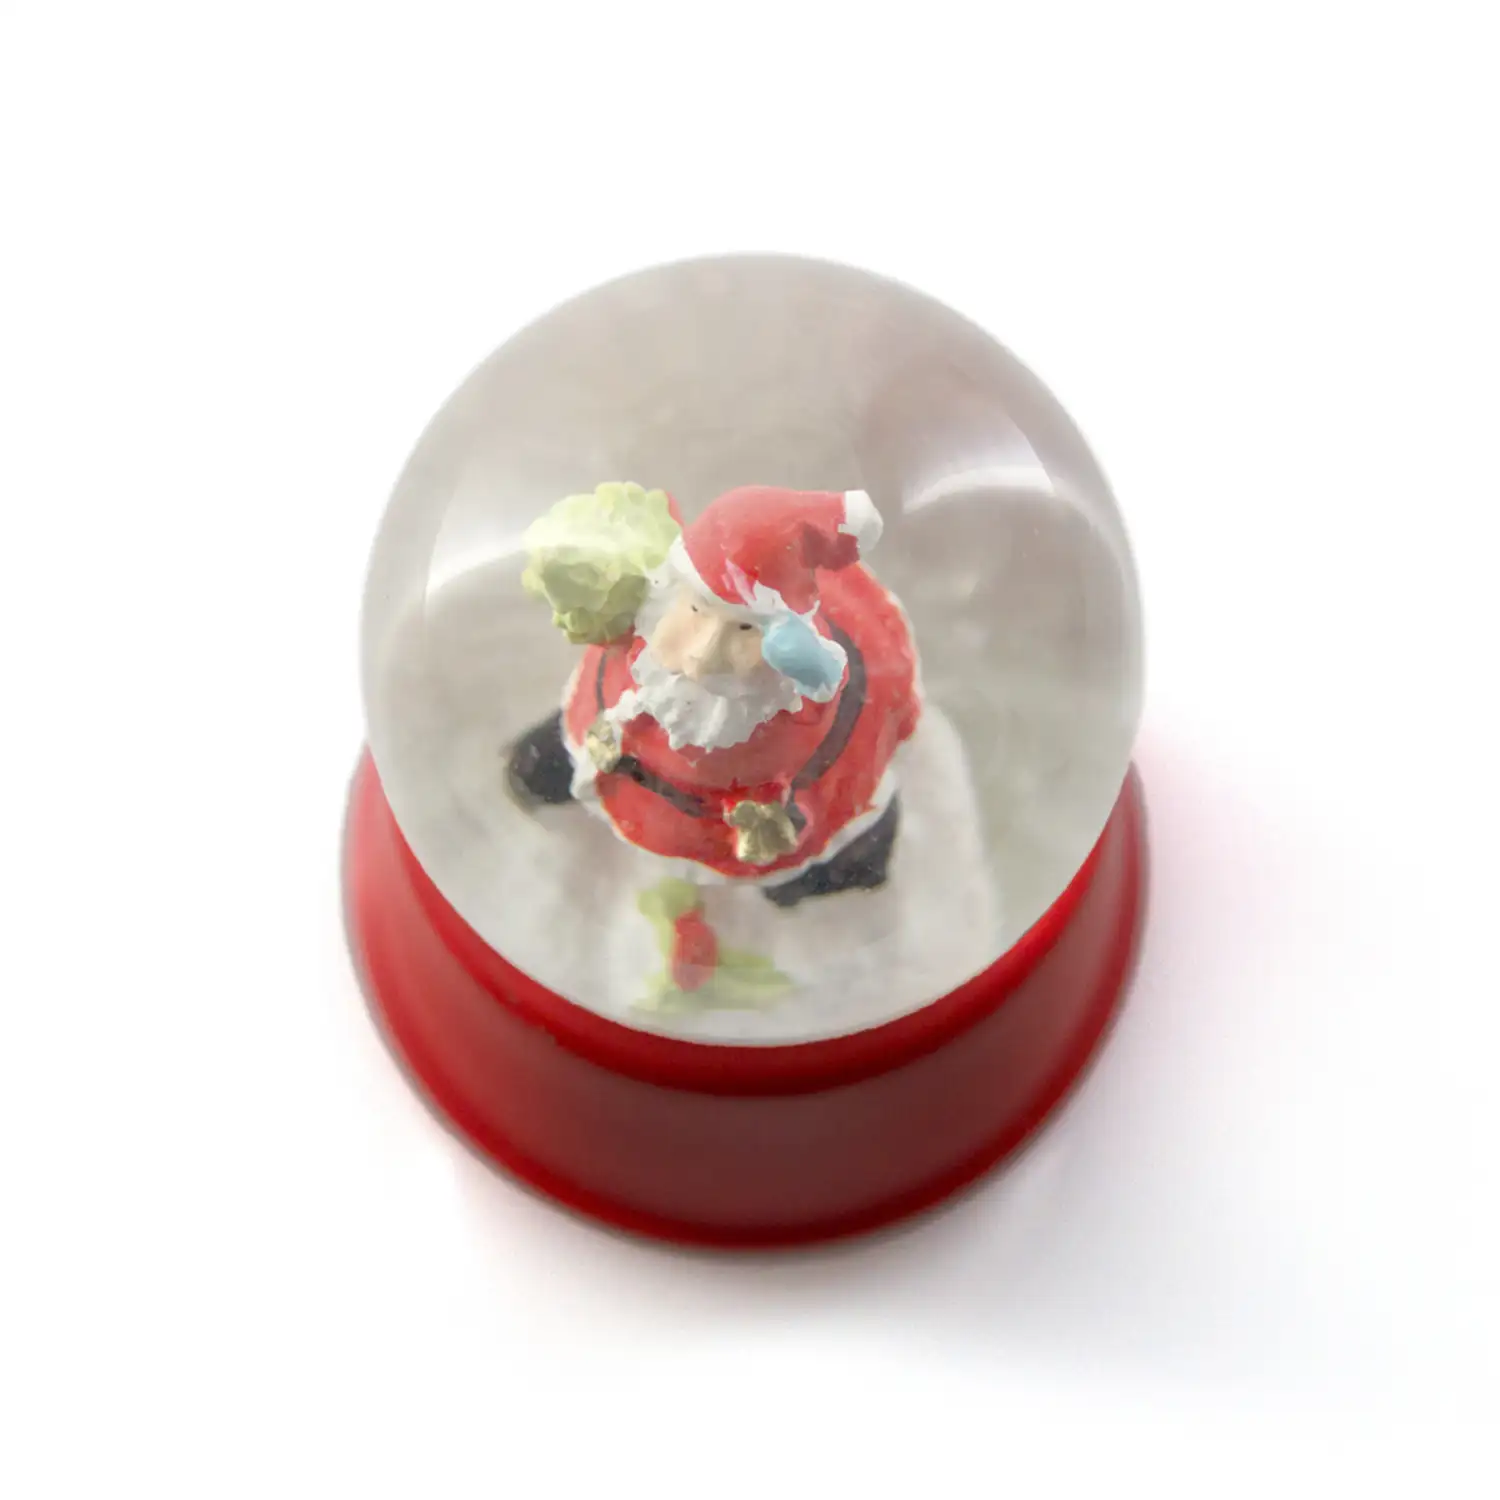 SASKY Bola de navidad con líquido interior con nieve diseño de Papá Noel